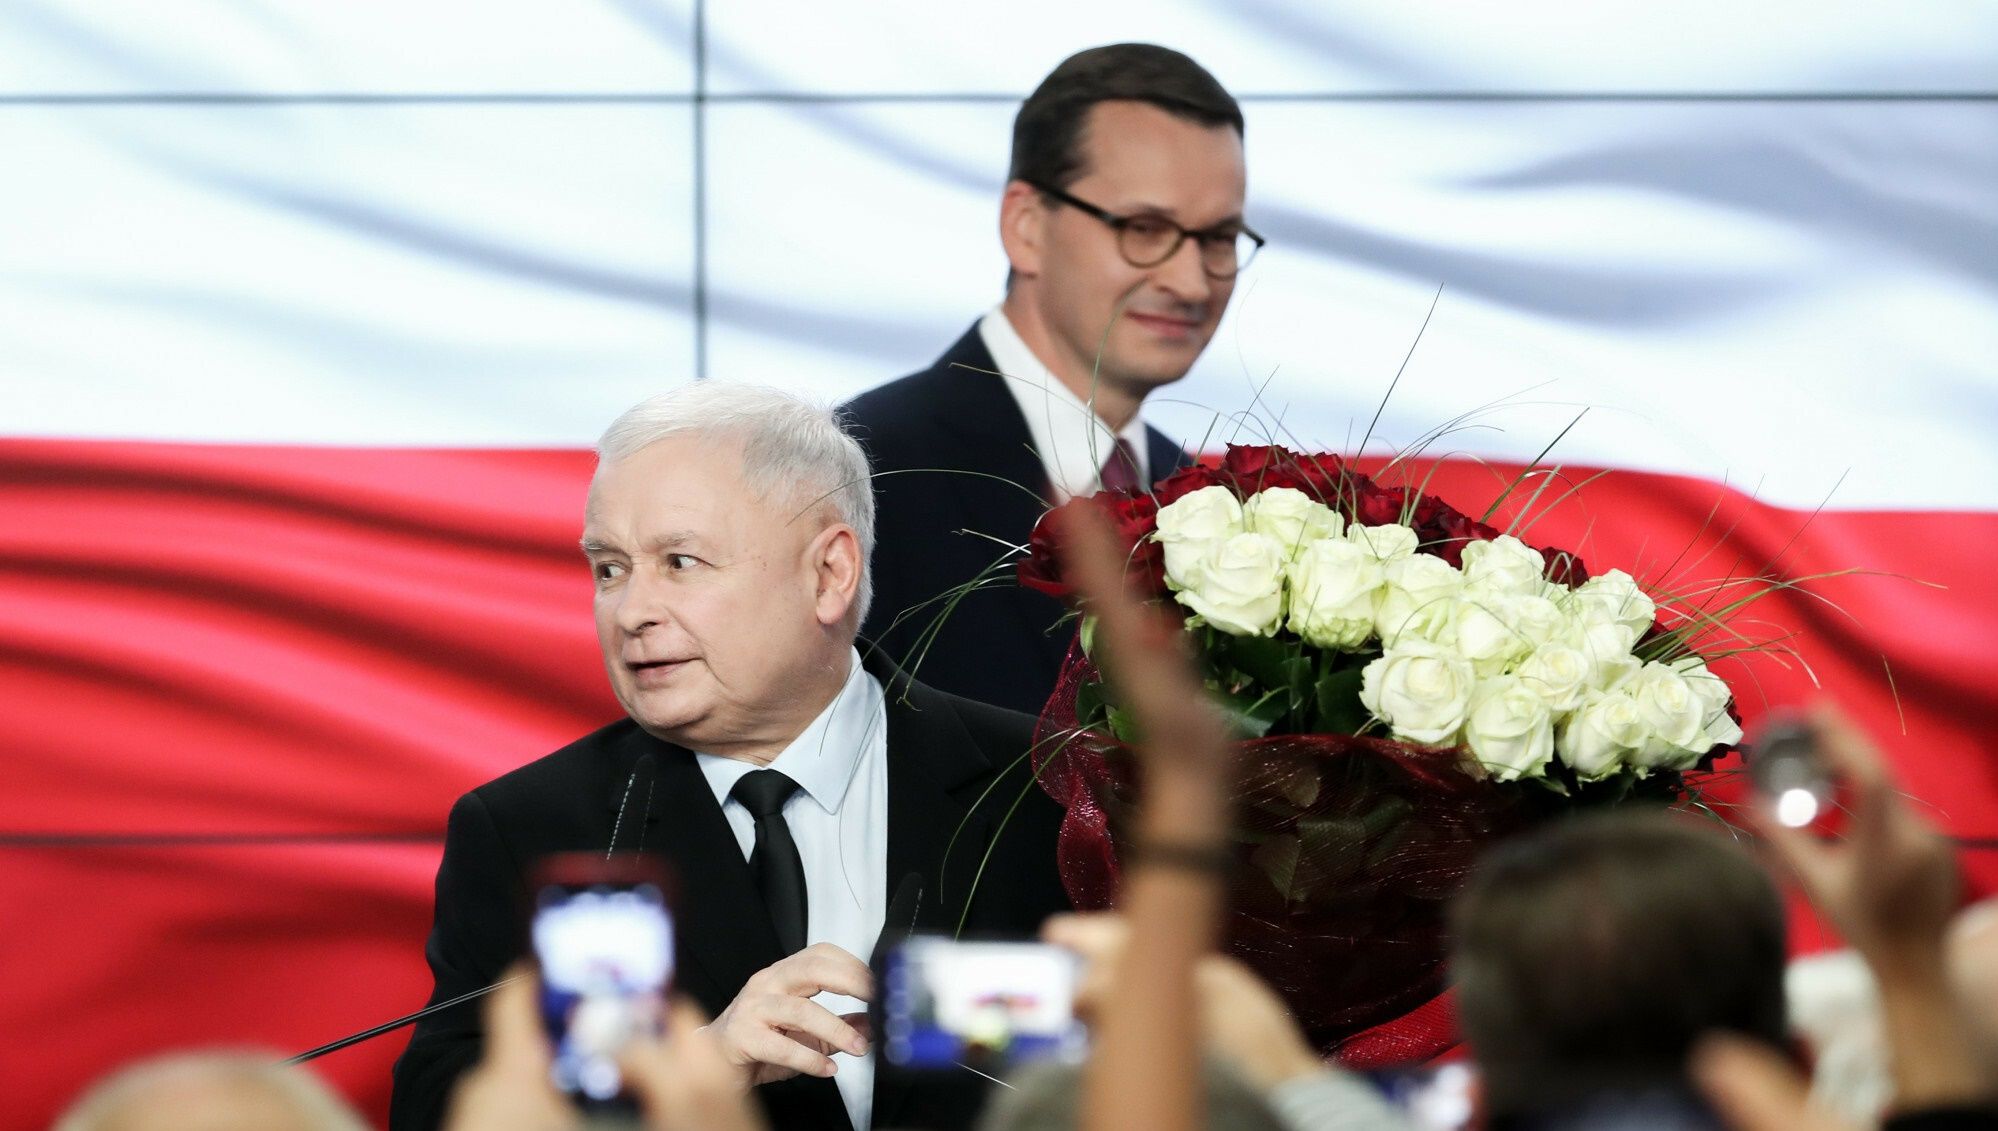 Mateusz Morawiecki, Jarosław Kaczyński